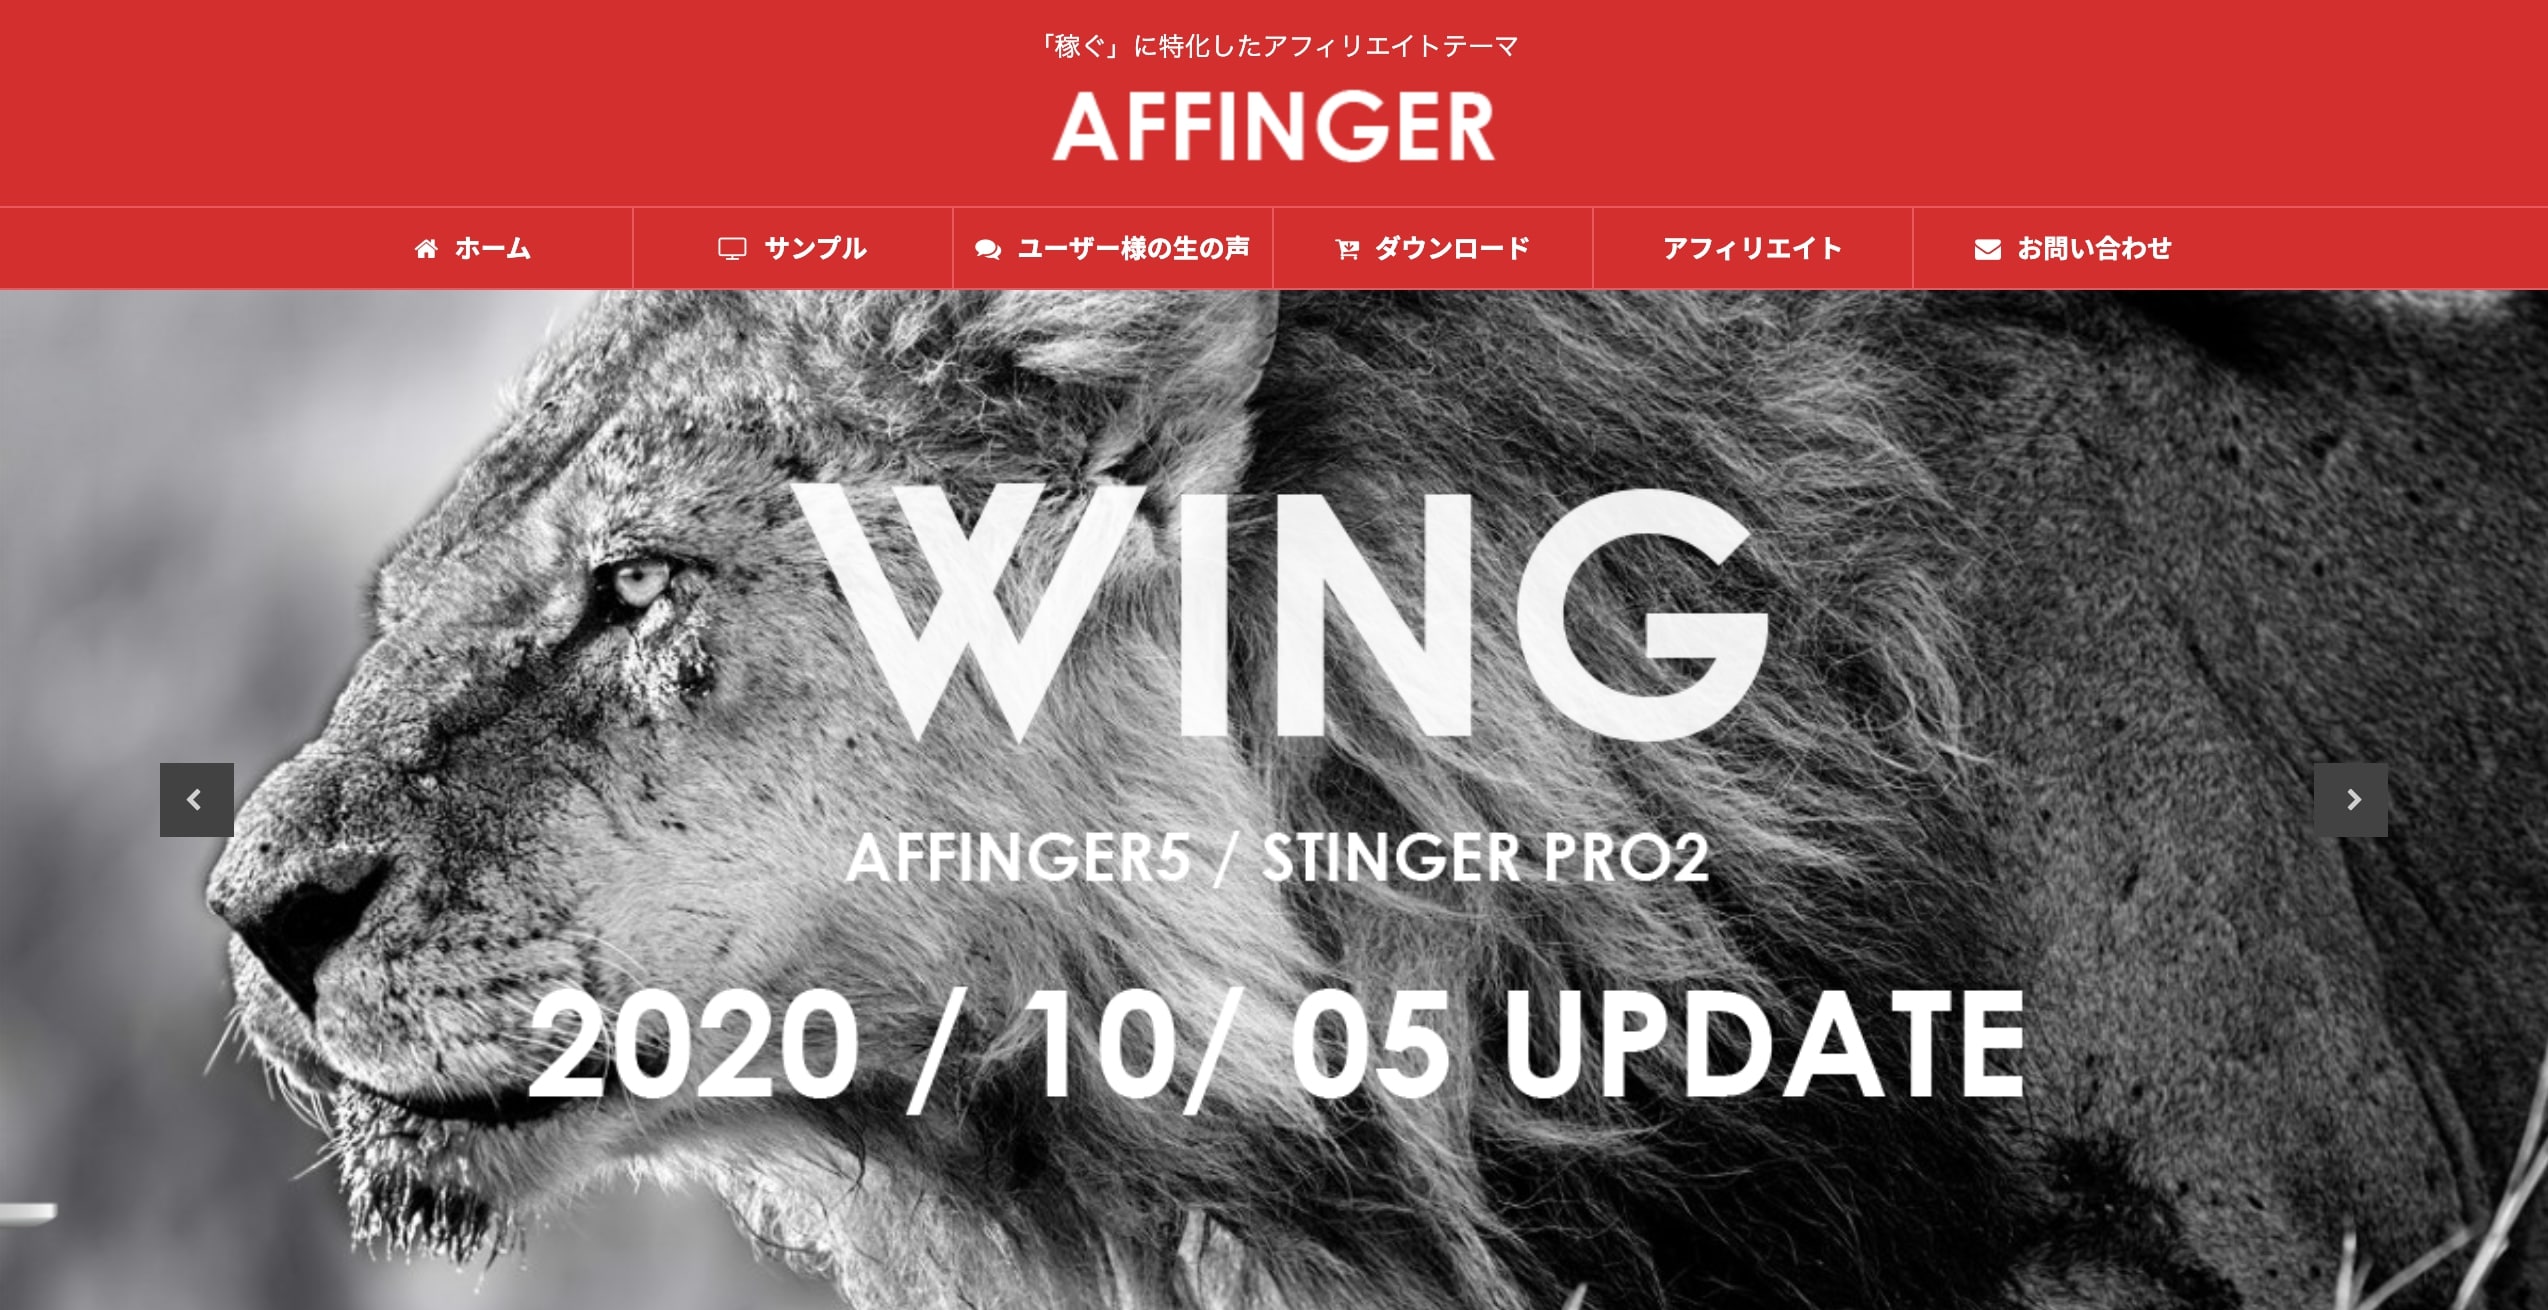 AFFINGER5でプロエンジニア並のブログデザインを実現